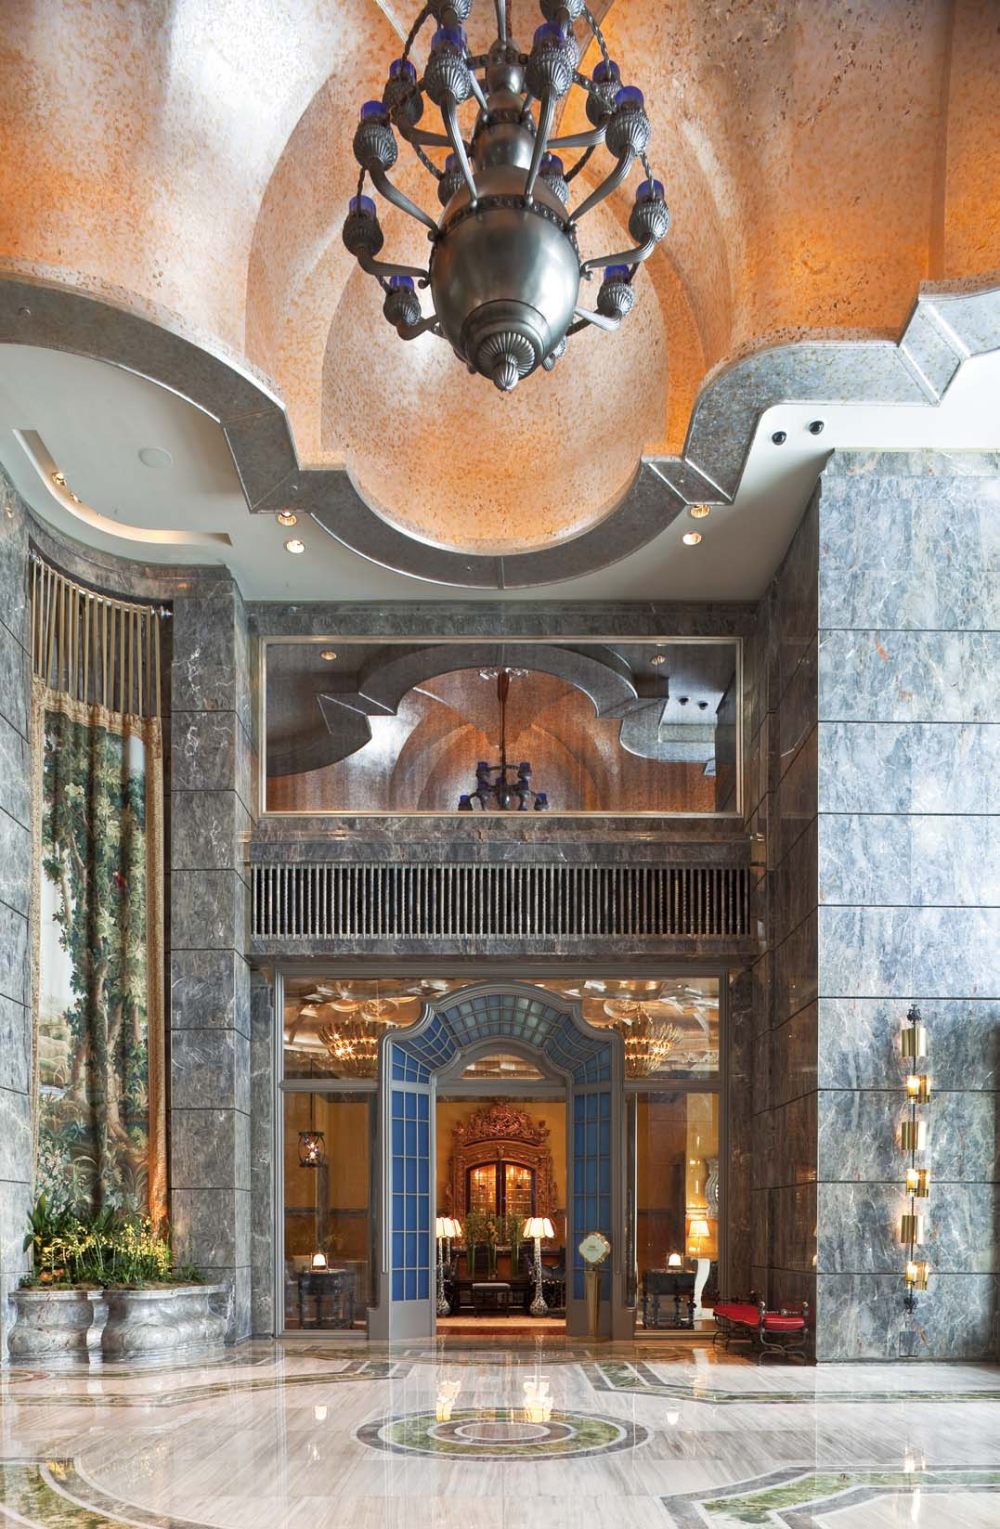 澳门美高梅酒店 MGM Macau Hotel_IMG_9540-C.jpg